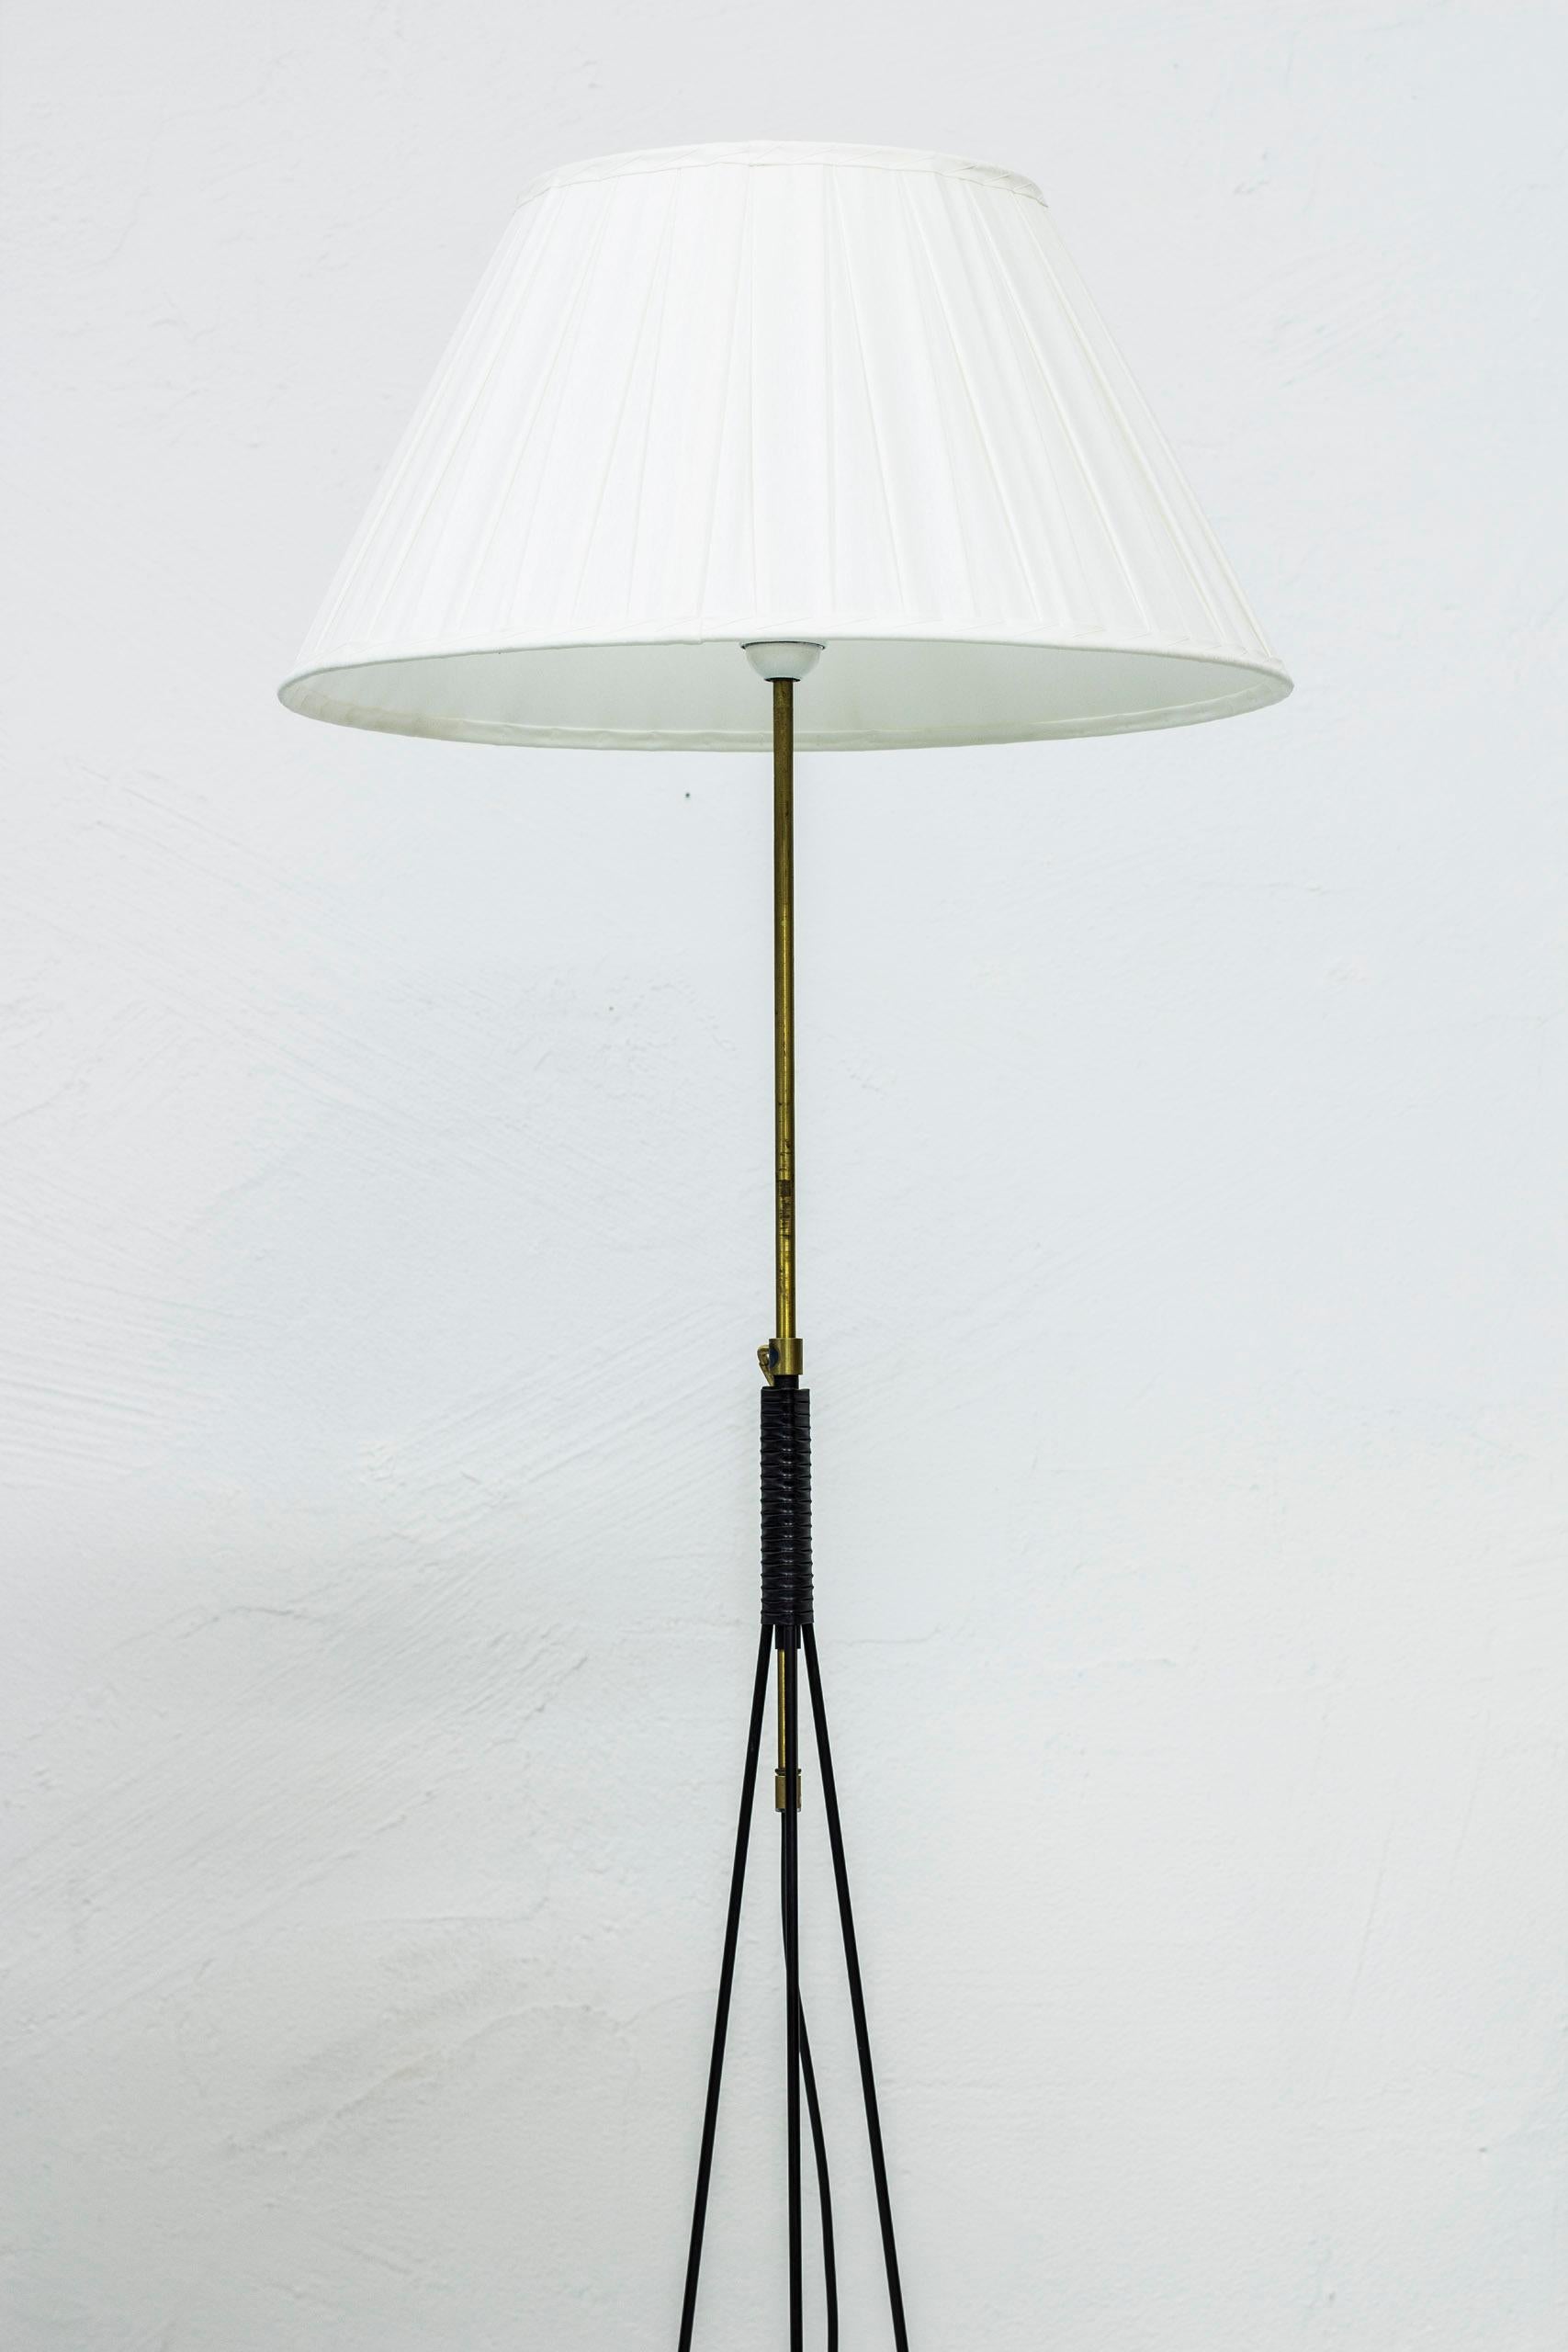 Scandinavian Modern Pair of floor lamps by Eje Ahlgren for Luco, Sweden, 1950s